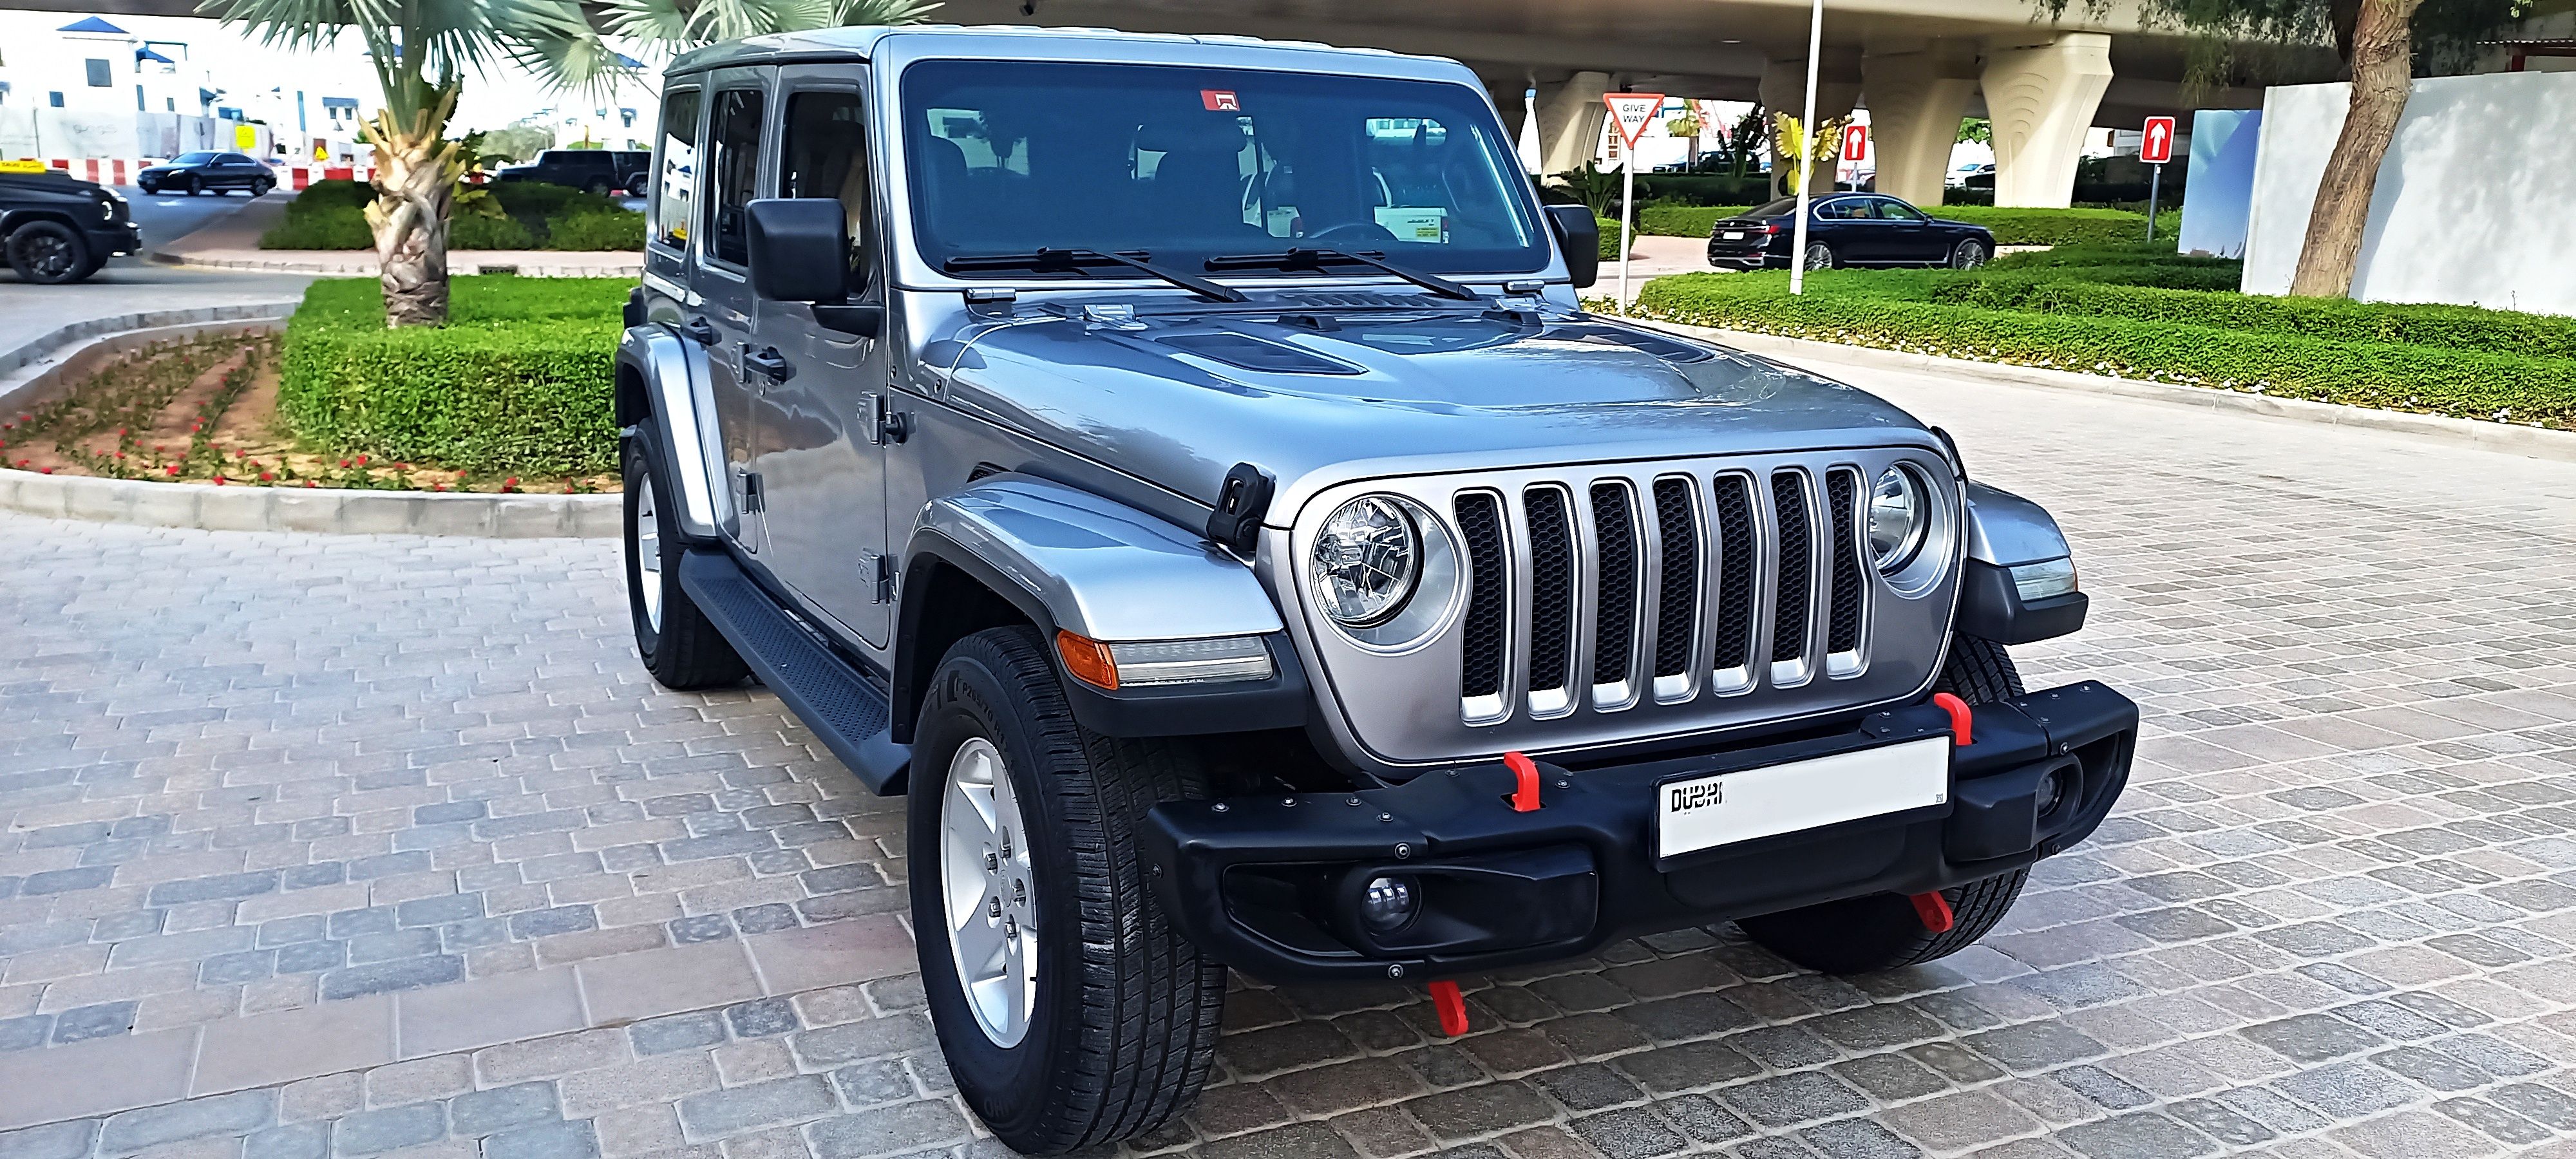 2019 Jeep Wrangler Unlimited in dubai